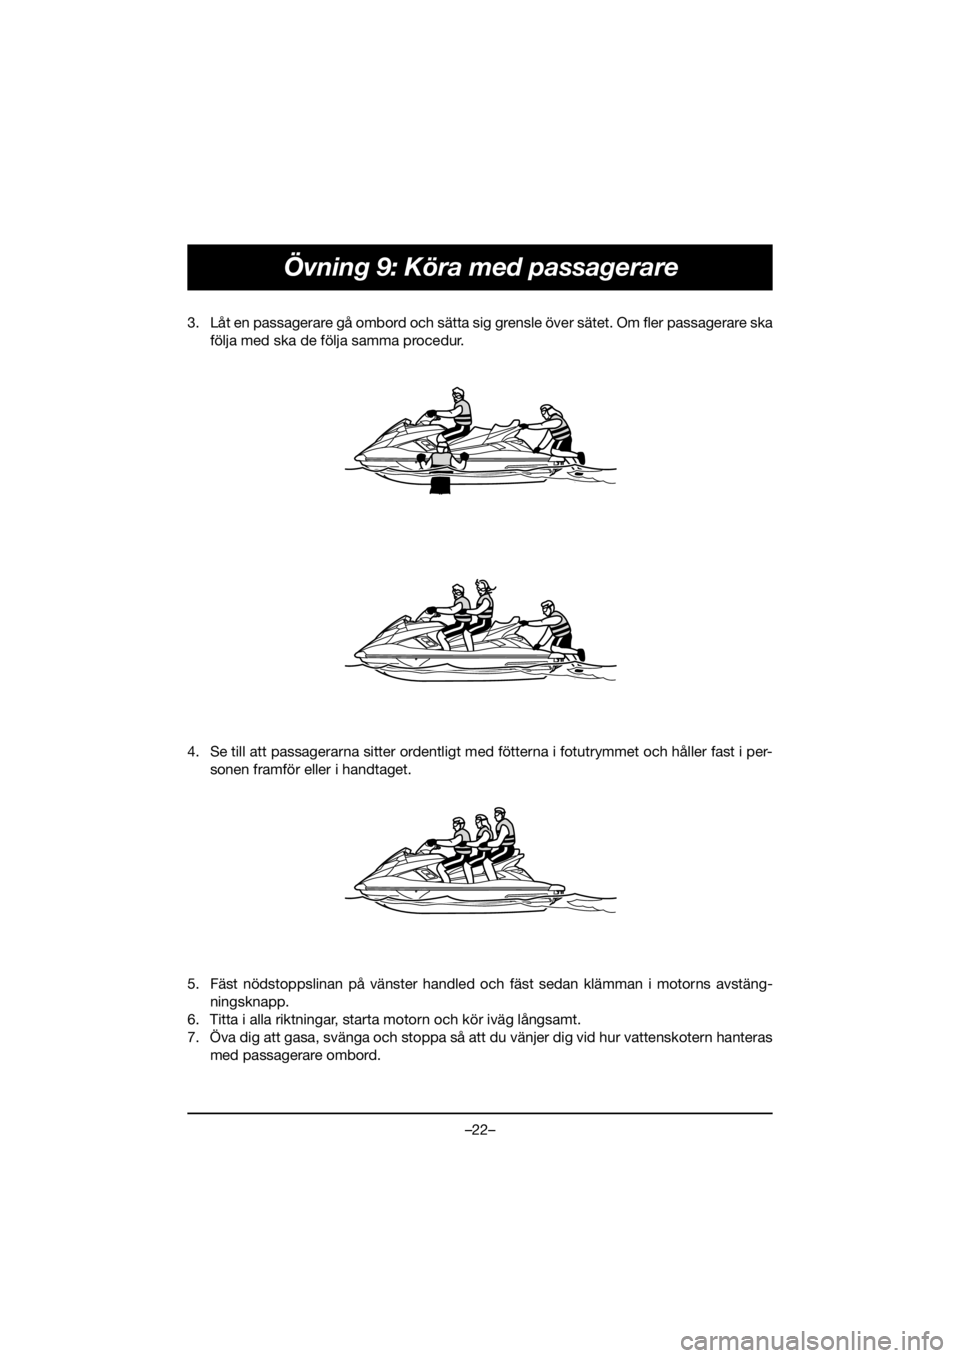 YAMAHA FX HO 2020  Manuale de Empleo (in Spanish) –22–
Övning 9: Köra med passagerare
3. Låt en passagerare gå ombord och sätta sig grensle över sätet. Om fler passagerare ska
följa med ska de följa samma procedur. 
4. Se till att passag